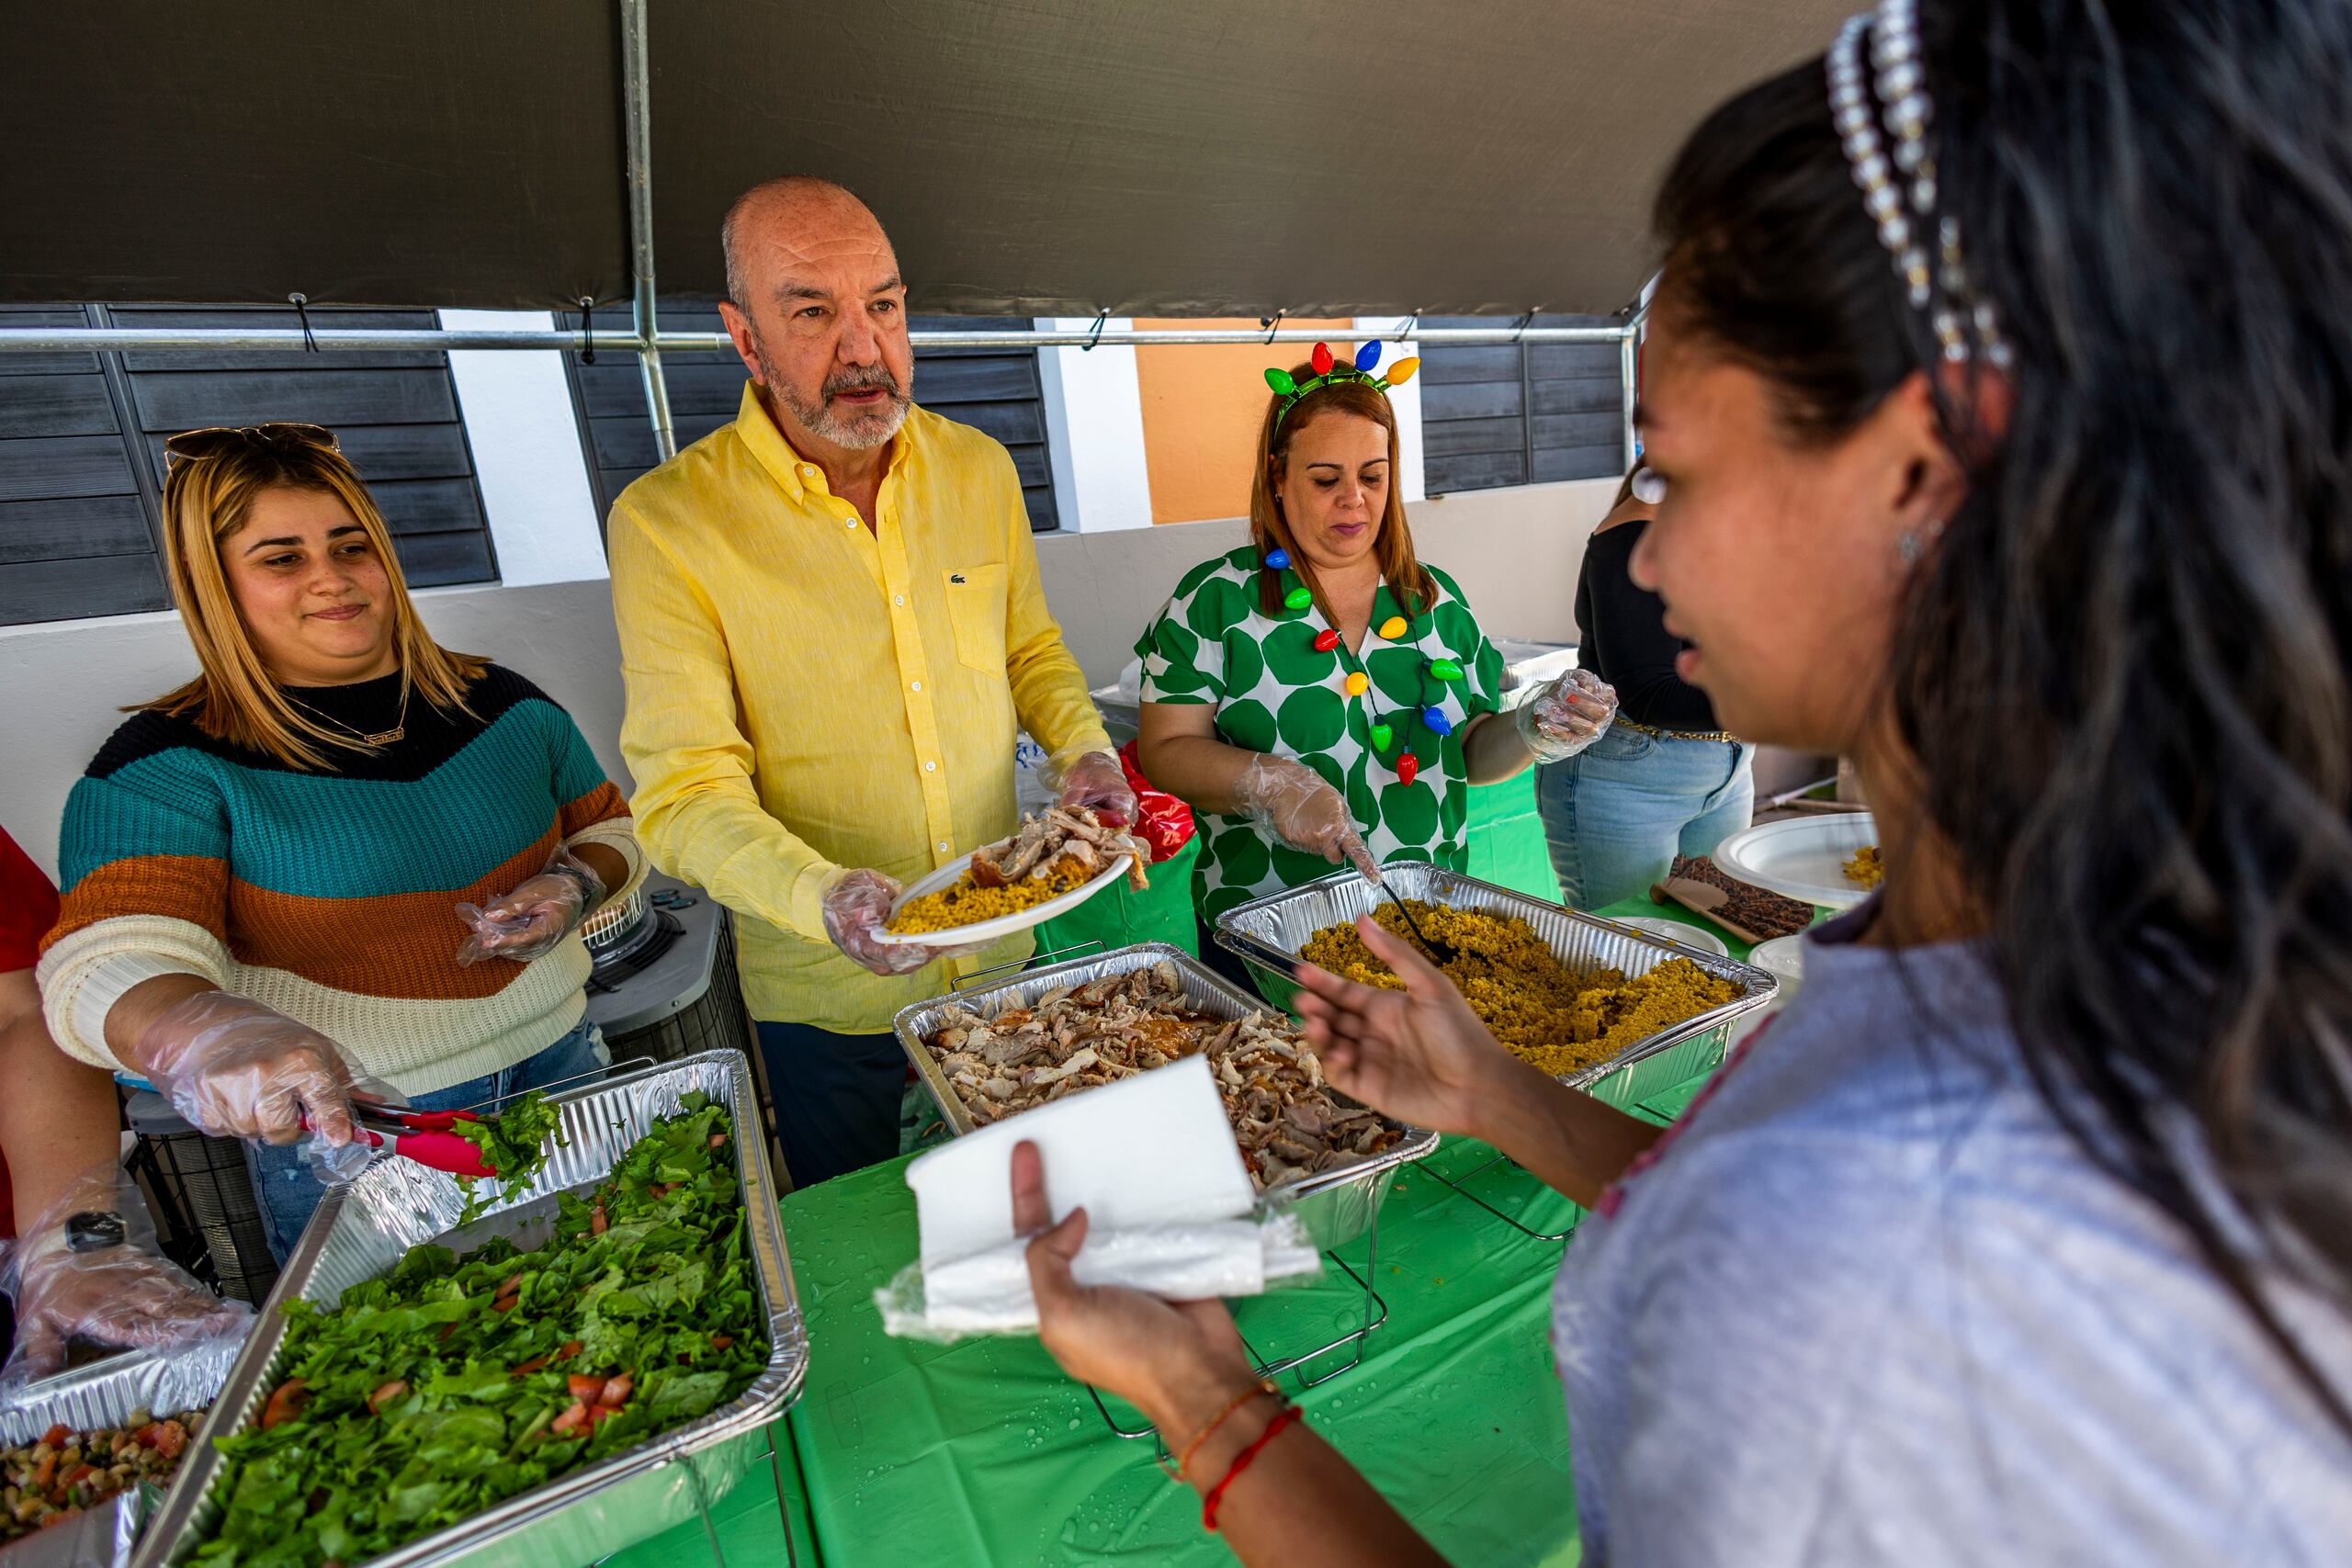 Como parte del evento, se declaró el inicio de la Navidad en el recinto. Aquí, el rector Luis A Tapia Maldonado sirve comida junto a otras empleadas de la institución como parte del almuerzo navideño.